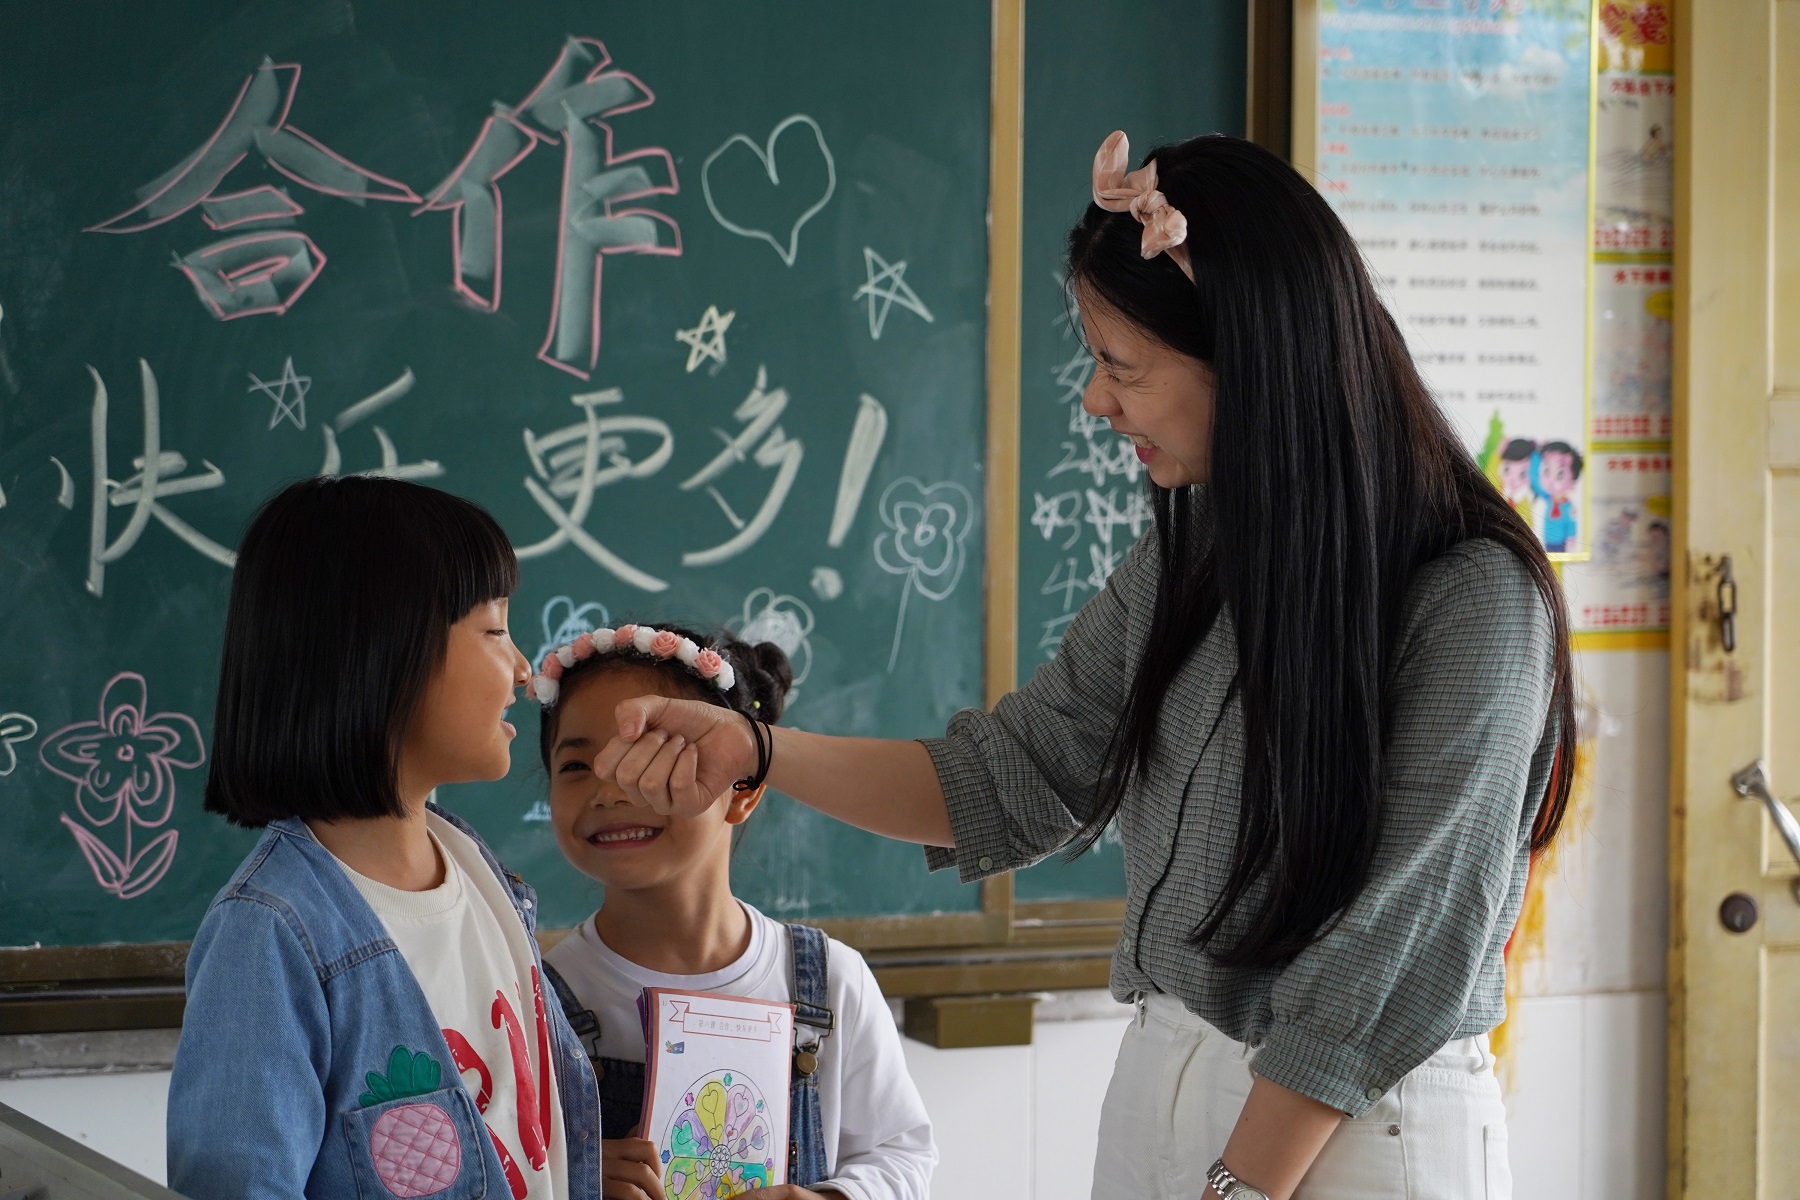 2019年5月21日-项目人员走访湖南灰汤镇小学刘旸老师时拍摄的积极关系课堂-2.jpg